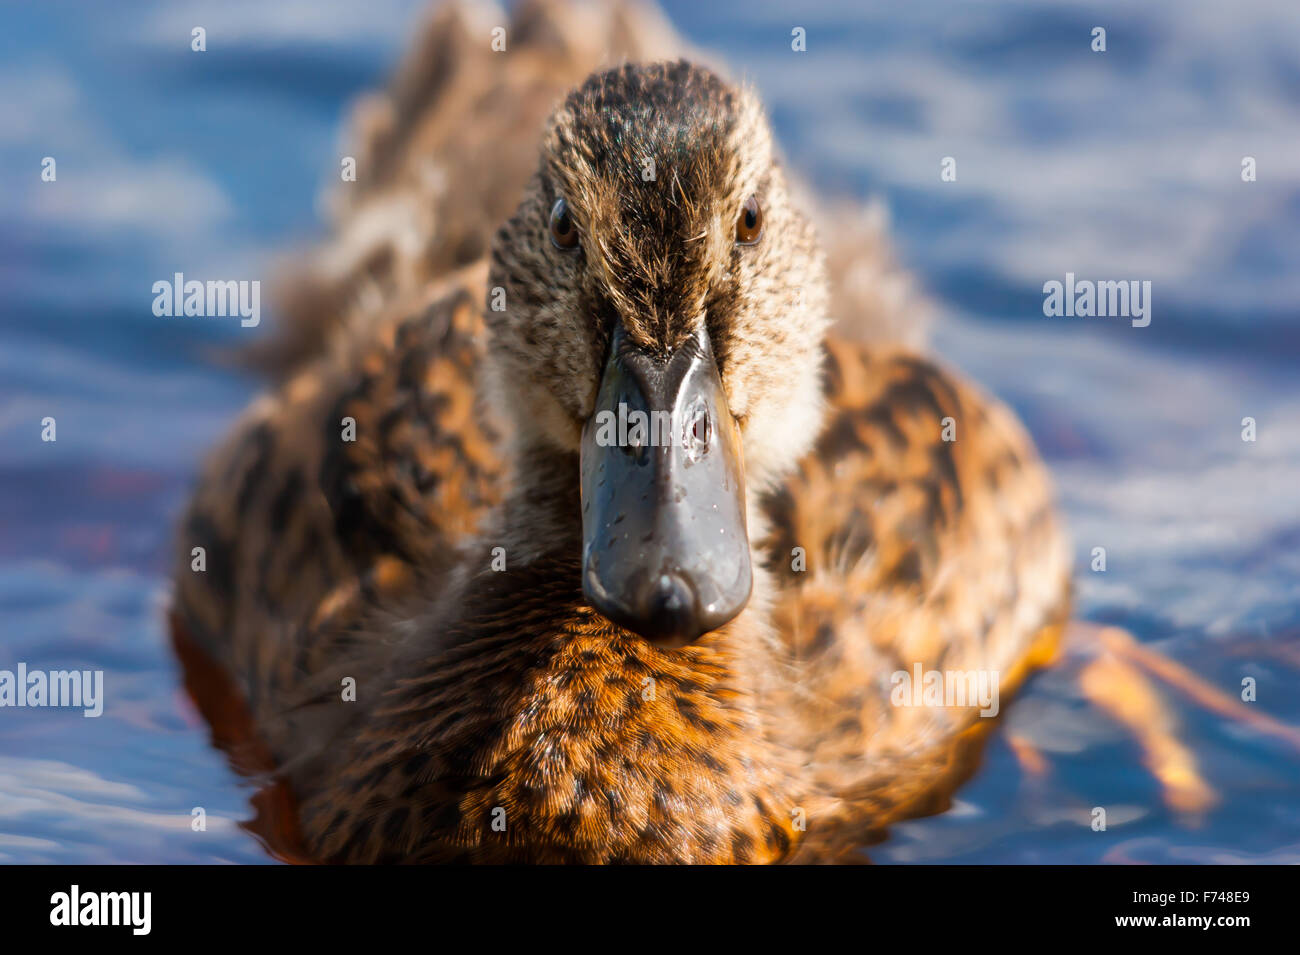 Wild female duck staring Stock Photo